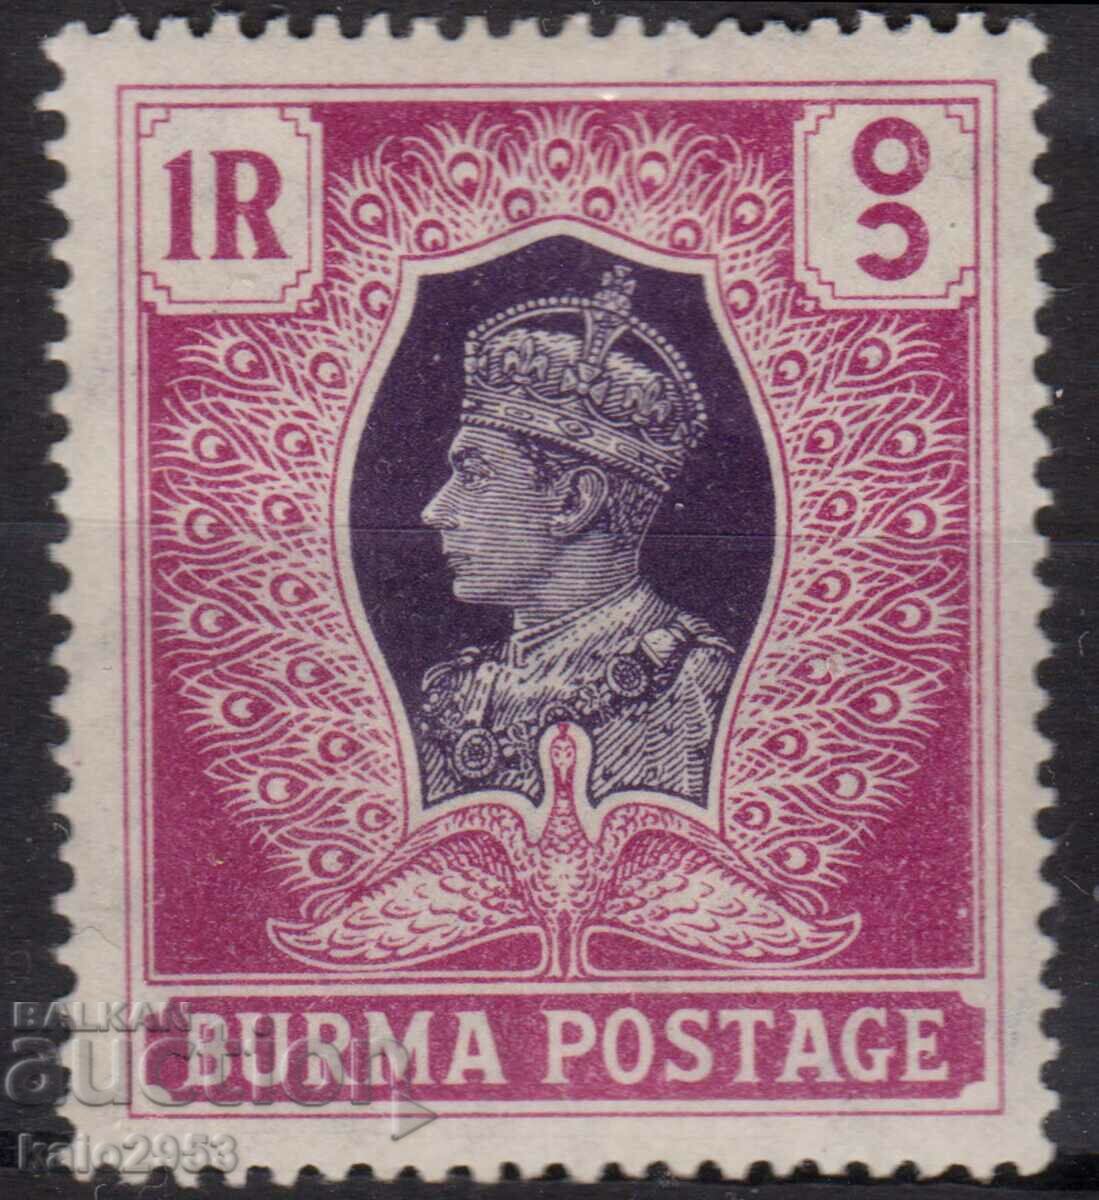 GB/Burma-1946-Regular-KG V,MLH